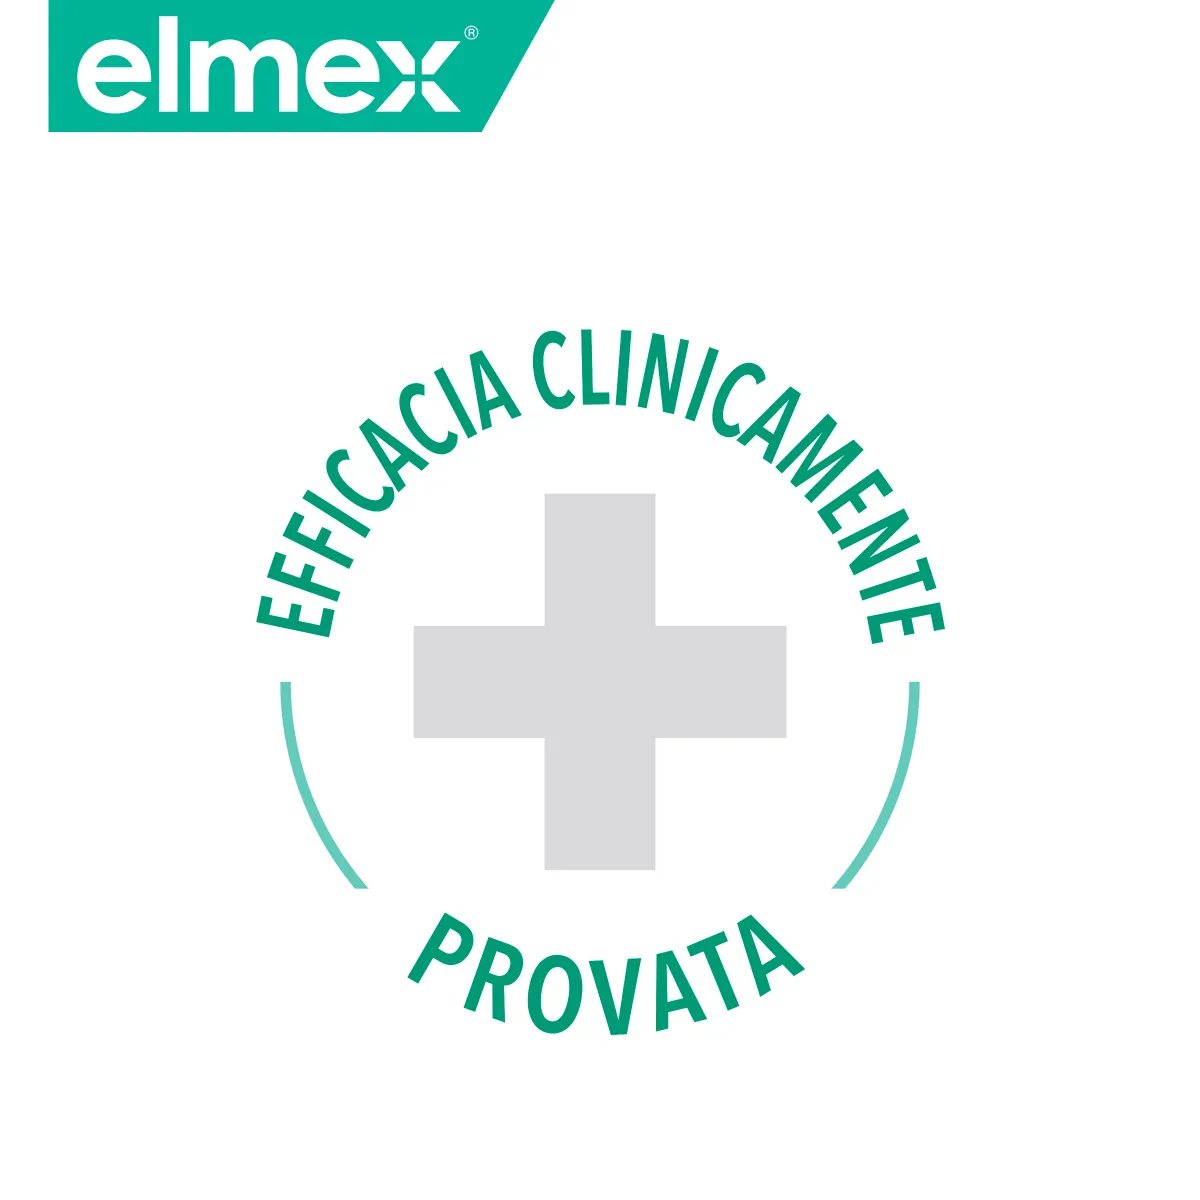 Elmex Sensitive Professional Whitening 75 ml Dentifricio Sbiancante per Denti Sensibili